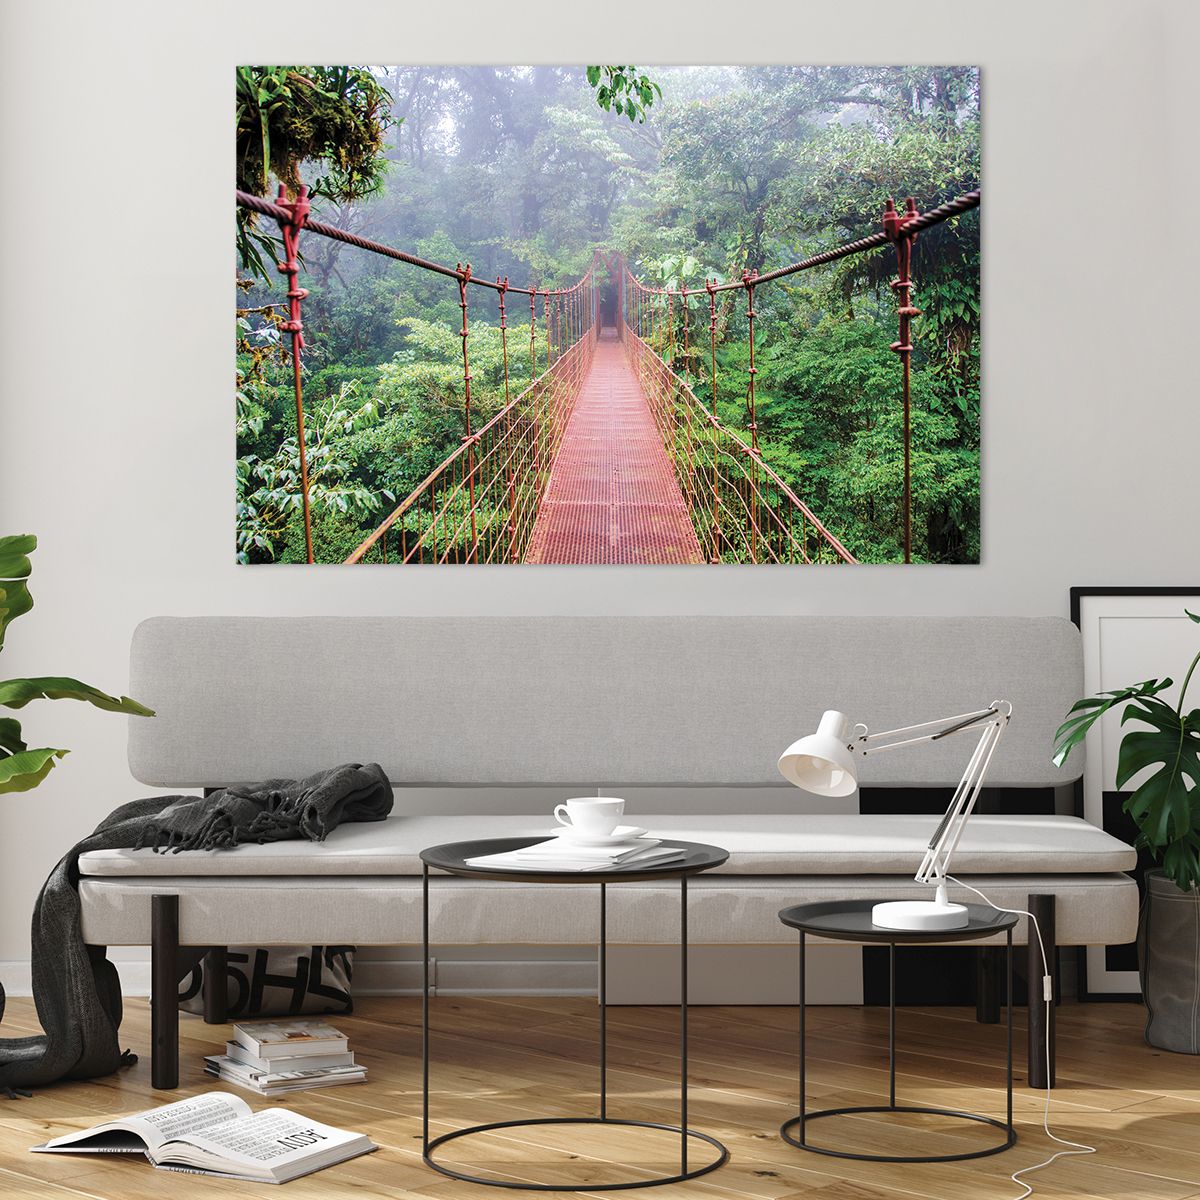 Glass picture  Landscape, Glass picture  Jungle, Glass picture  Costa Rica, Glass picture  Hanging Bridge, Glass picture  Nature